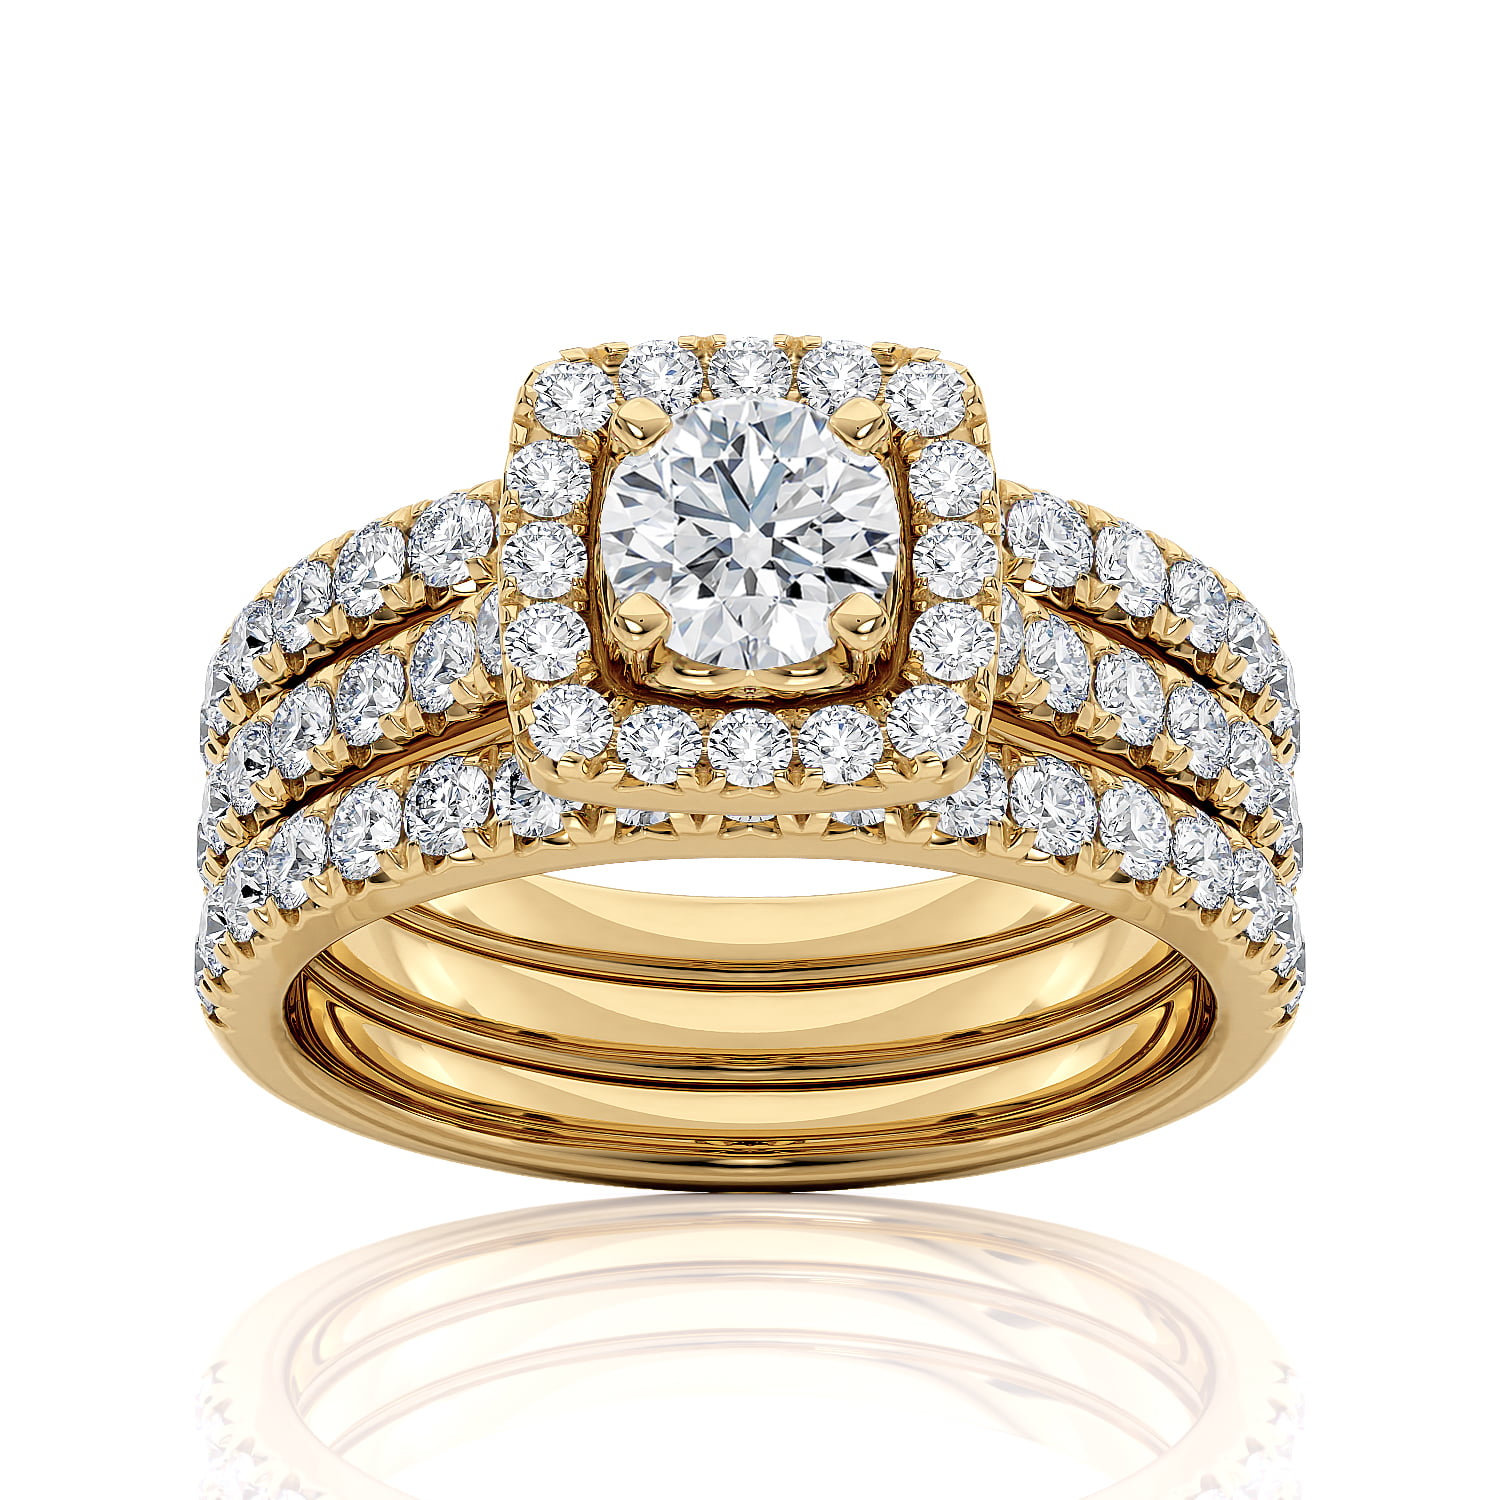 IGI Certified 2 Carat Diamond Engagement Ring for Women in 14k Yellow ...